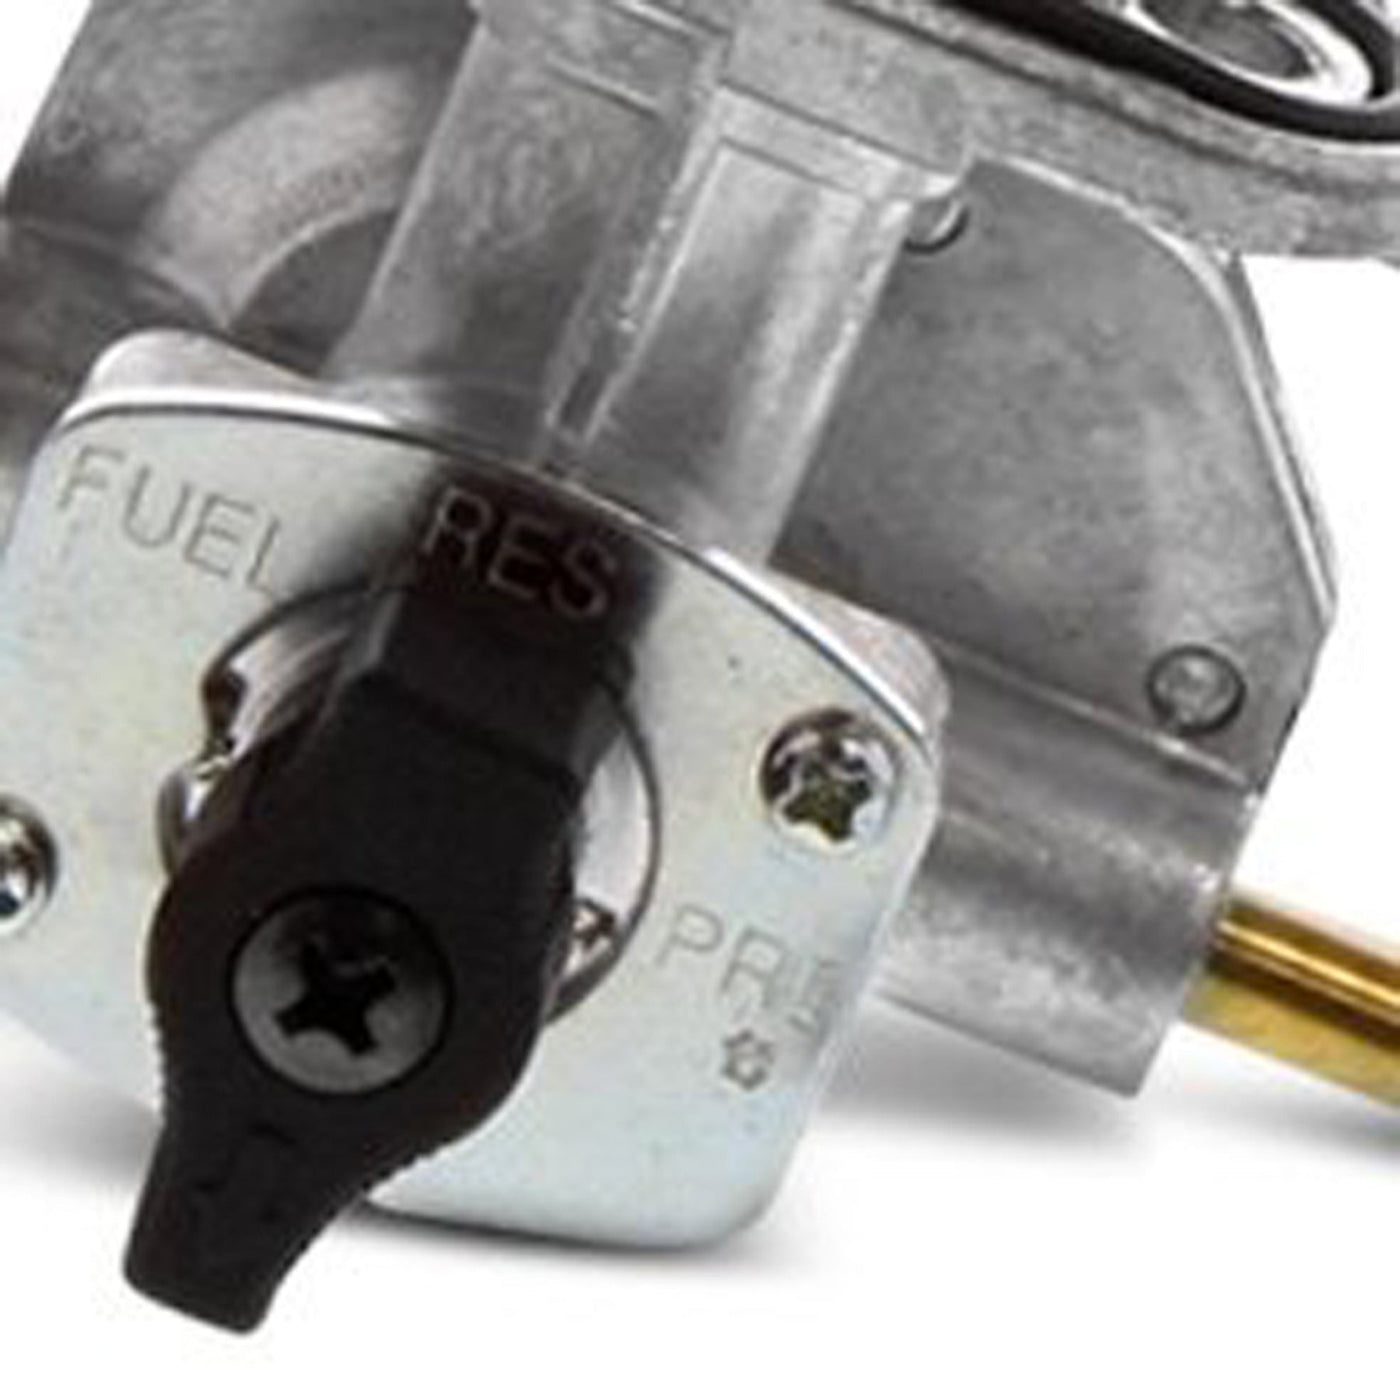 Fuel Star FS101-0112 Fuel Valve Kit #FS101-0112